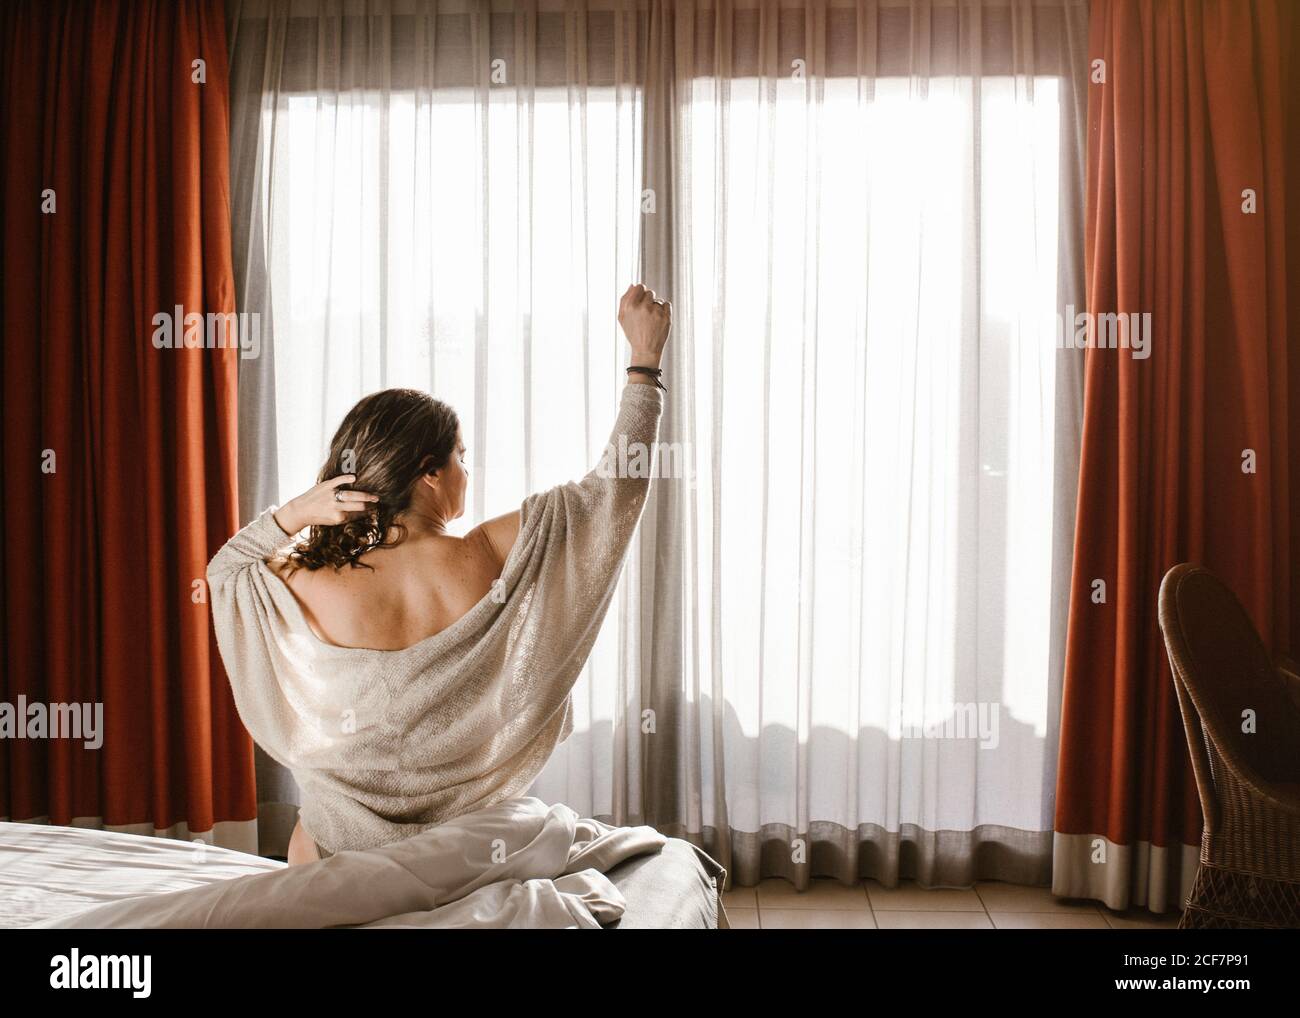 Vista posteriore della femmina adulta con braccio sollevato che guarda lontano e toccando i capelli mentre si siede sul letto contro la finestra chiusa con tende rosse e tulle bianco al mattino soleggiato Foto Stock